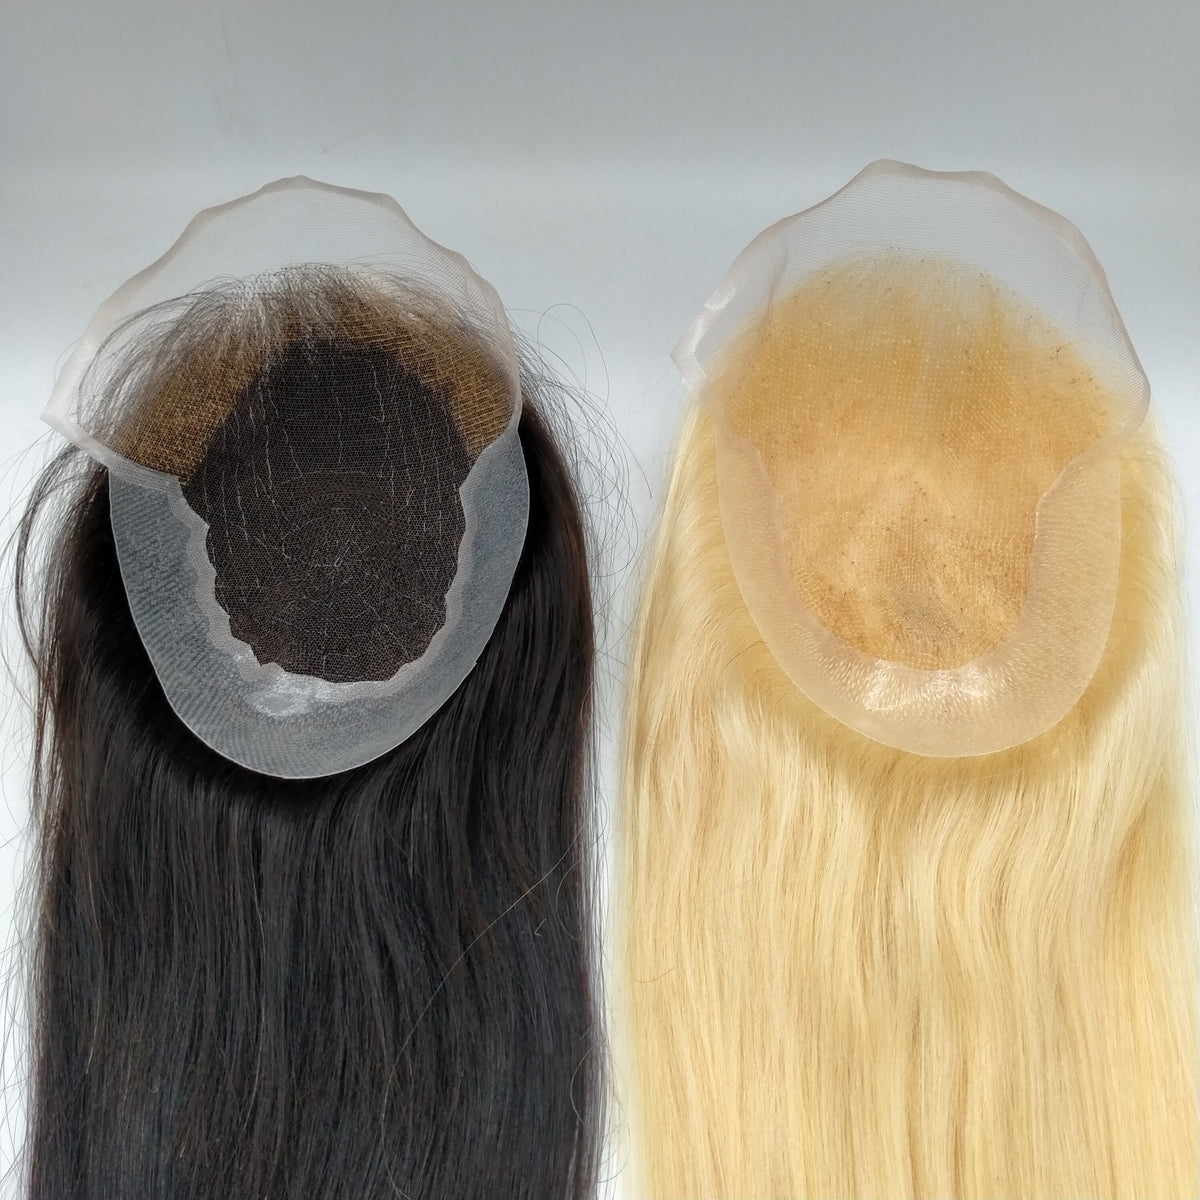 Svájci csipke hajfedő bőrrel hátul és oldalt nők számára 6&quot; x 8&quot;